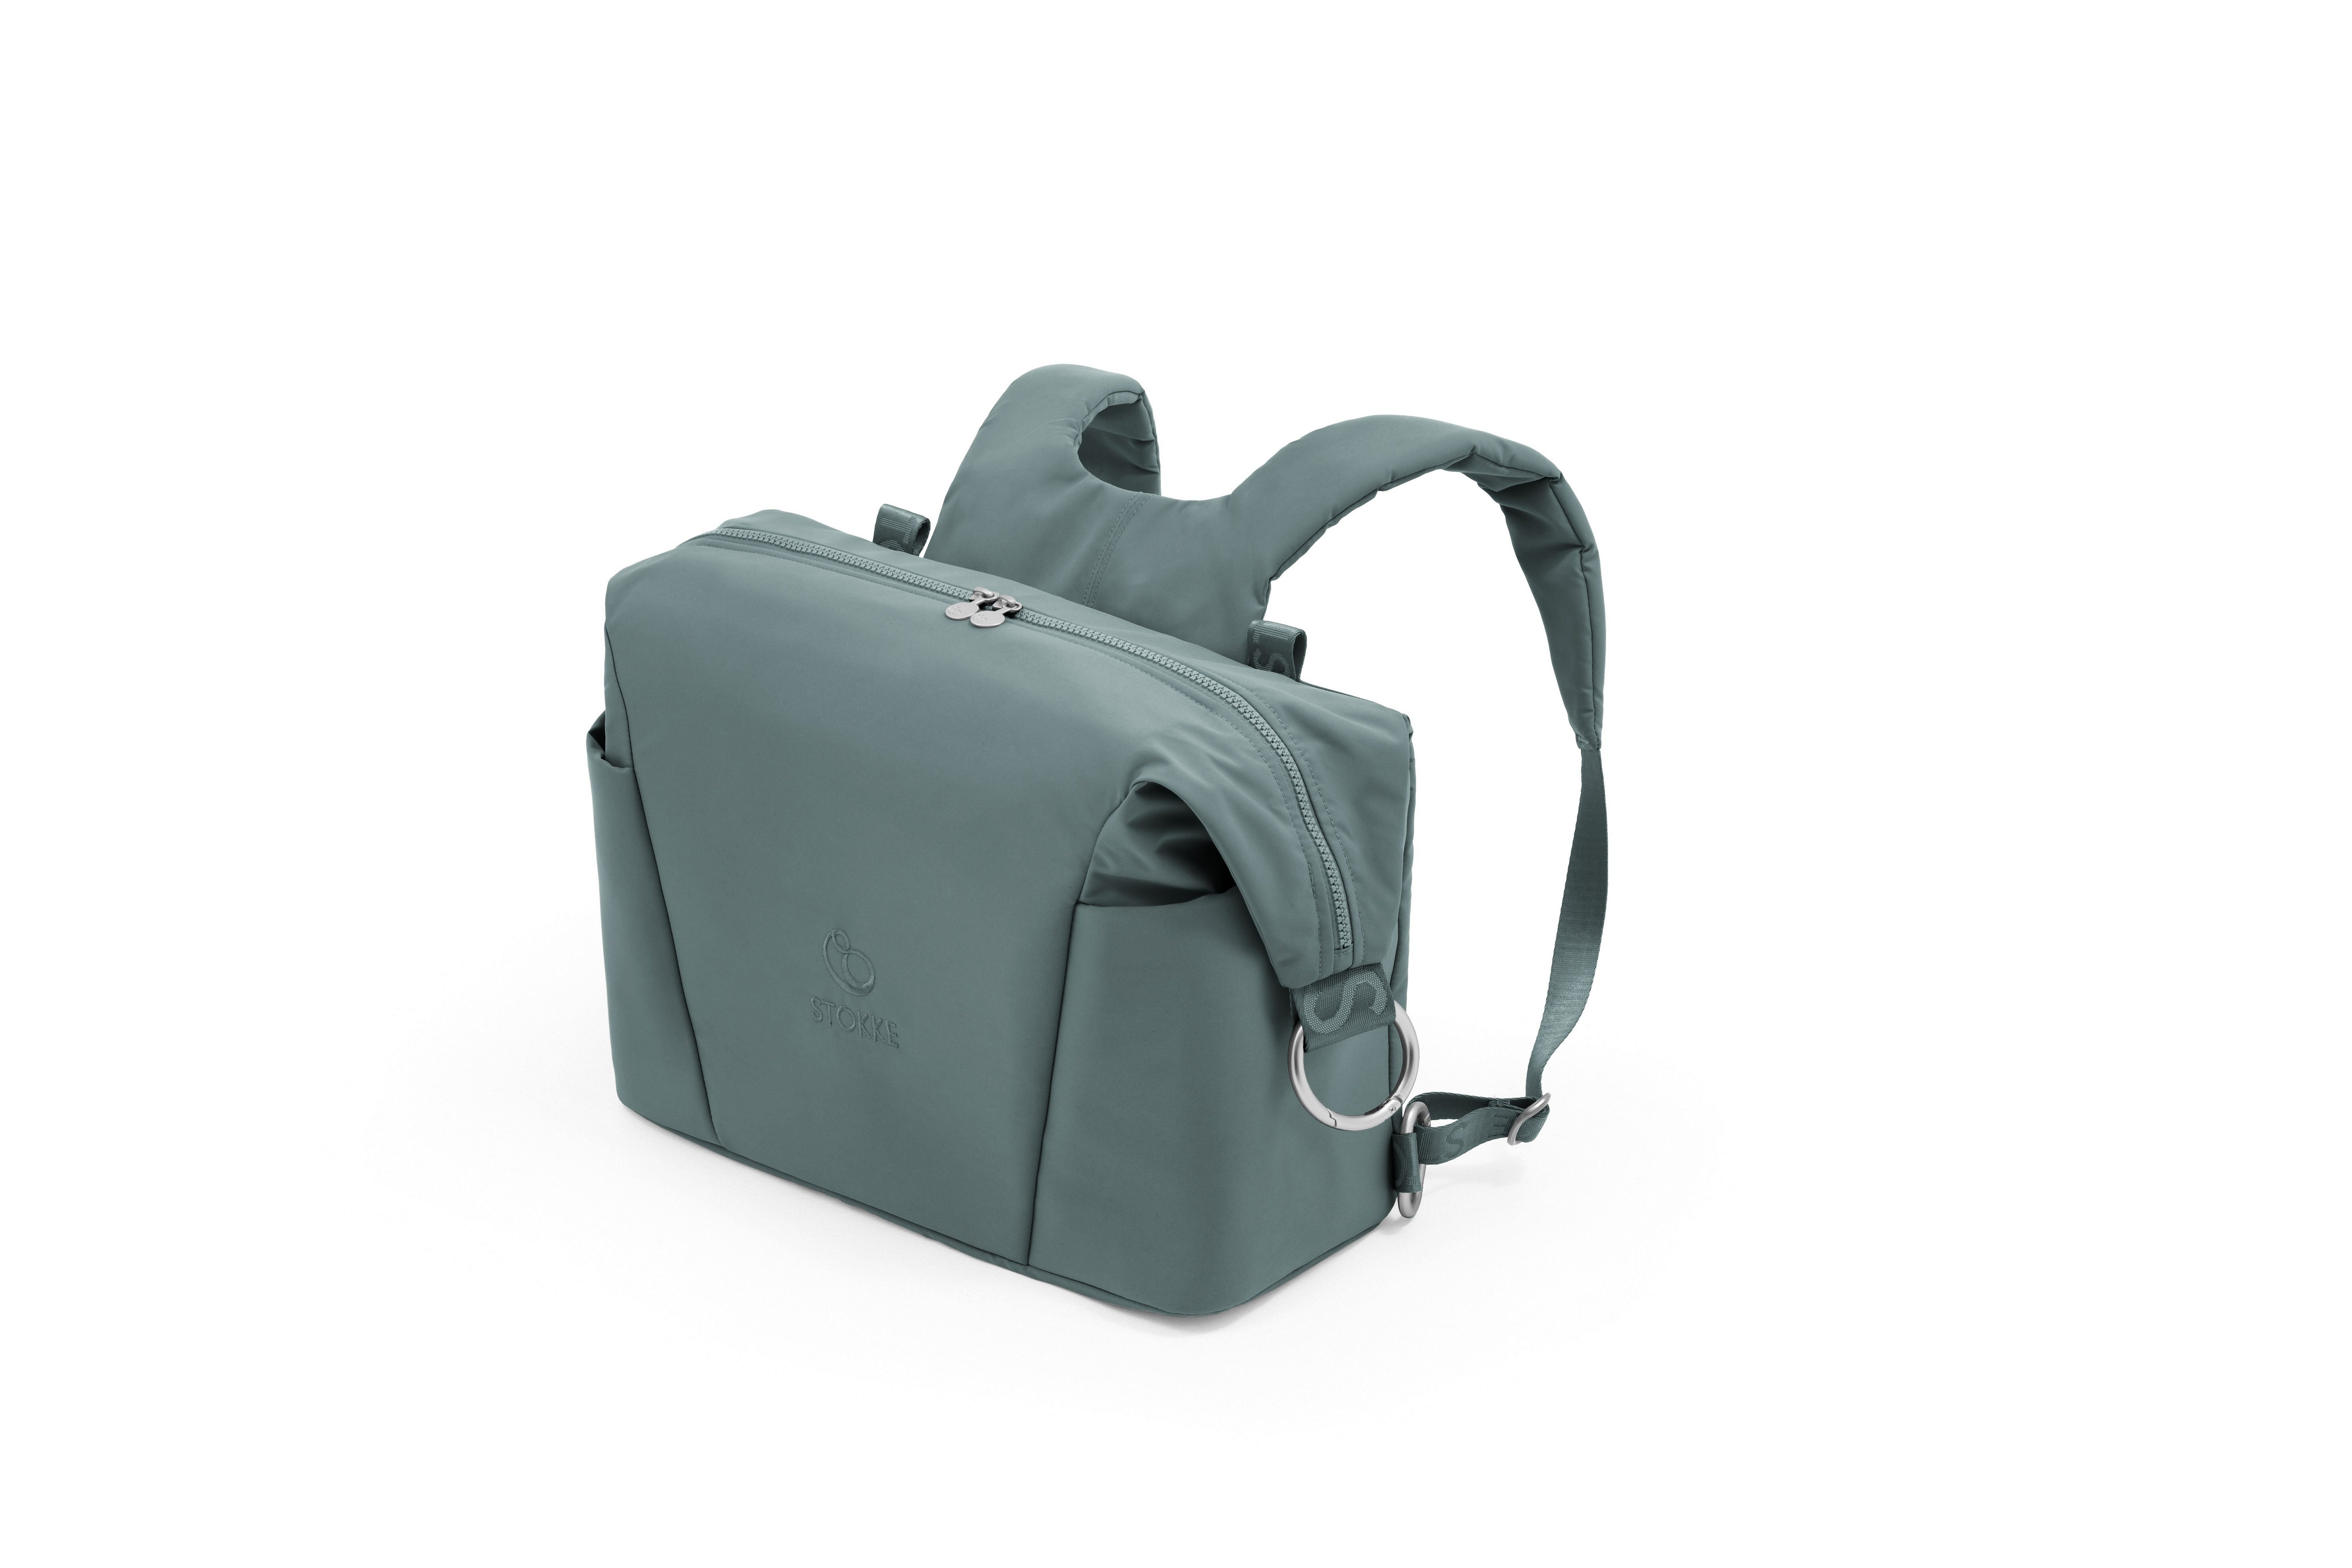 Stokke Wickeltasche Tasche mit zwei Trageoptionen - auch passend für den Xplory X Cool Teal